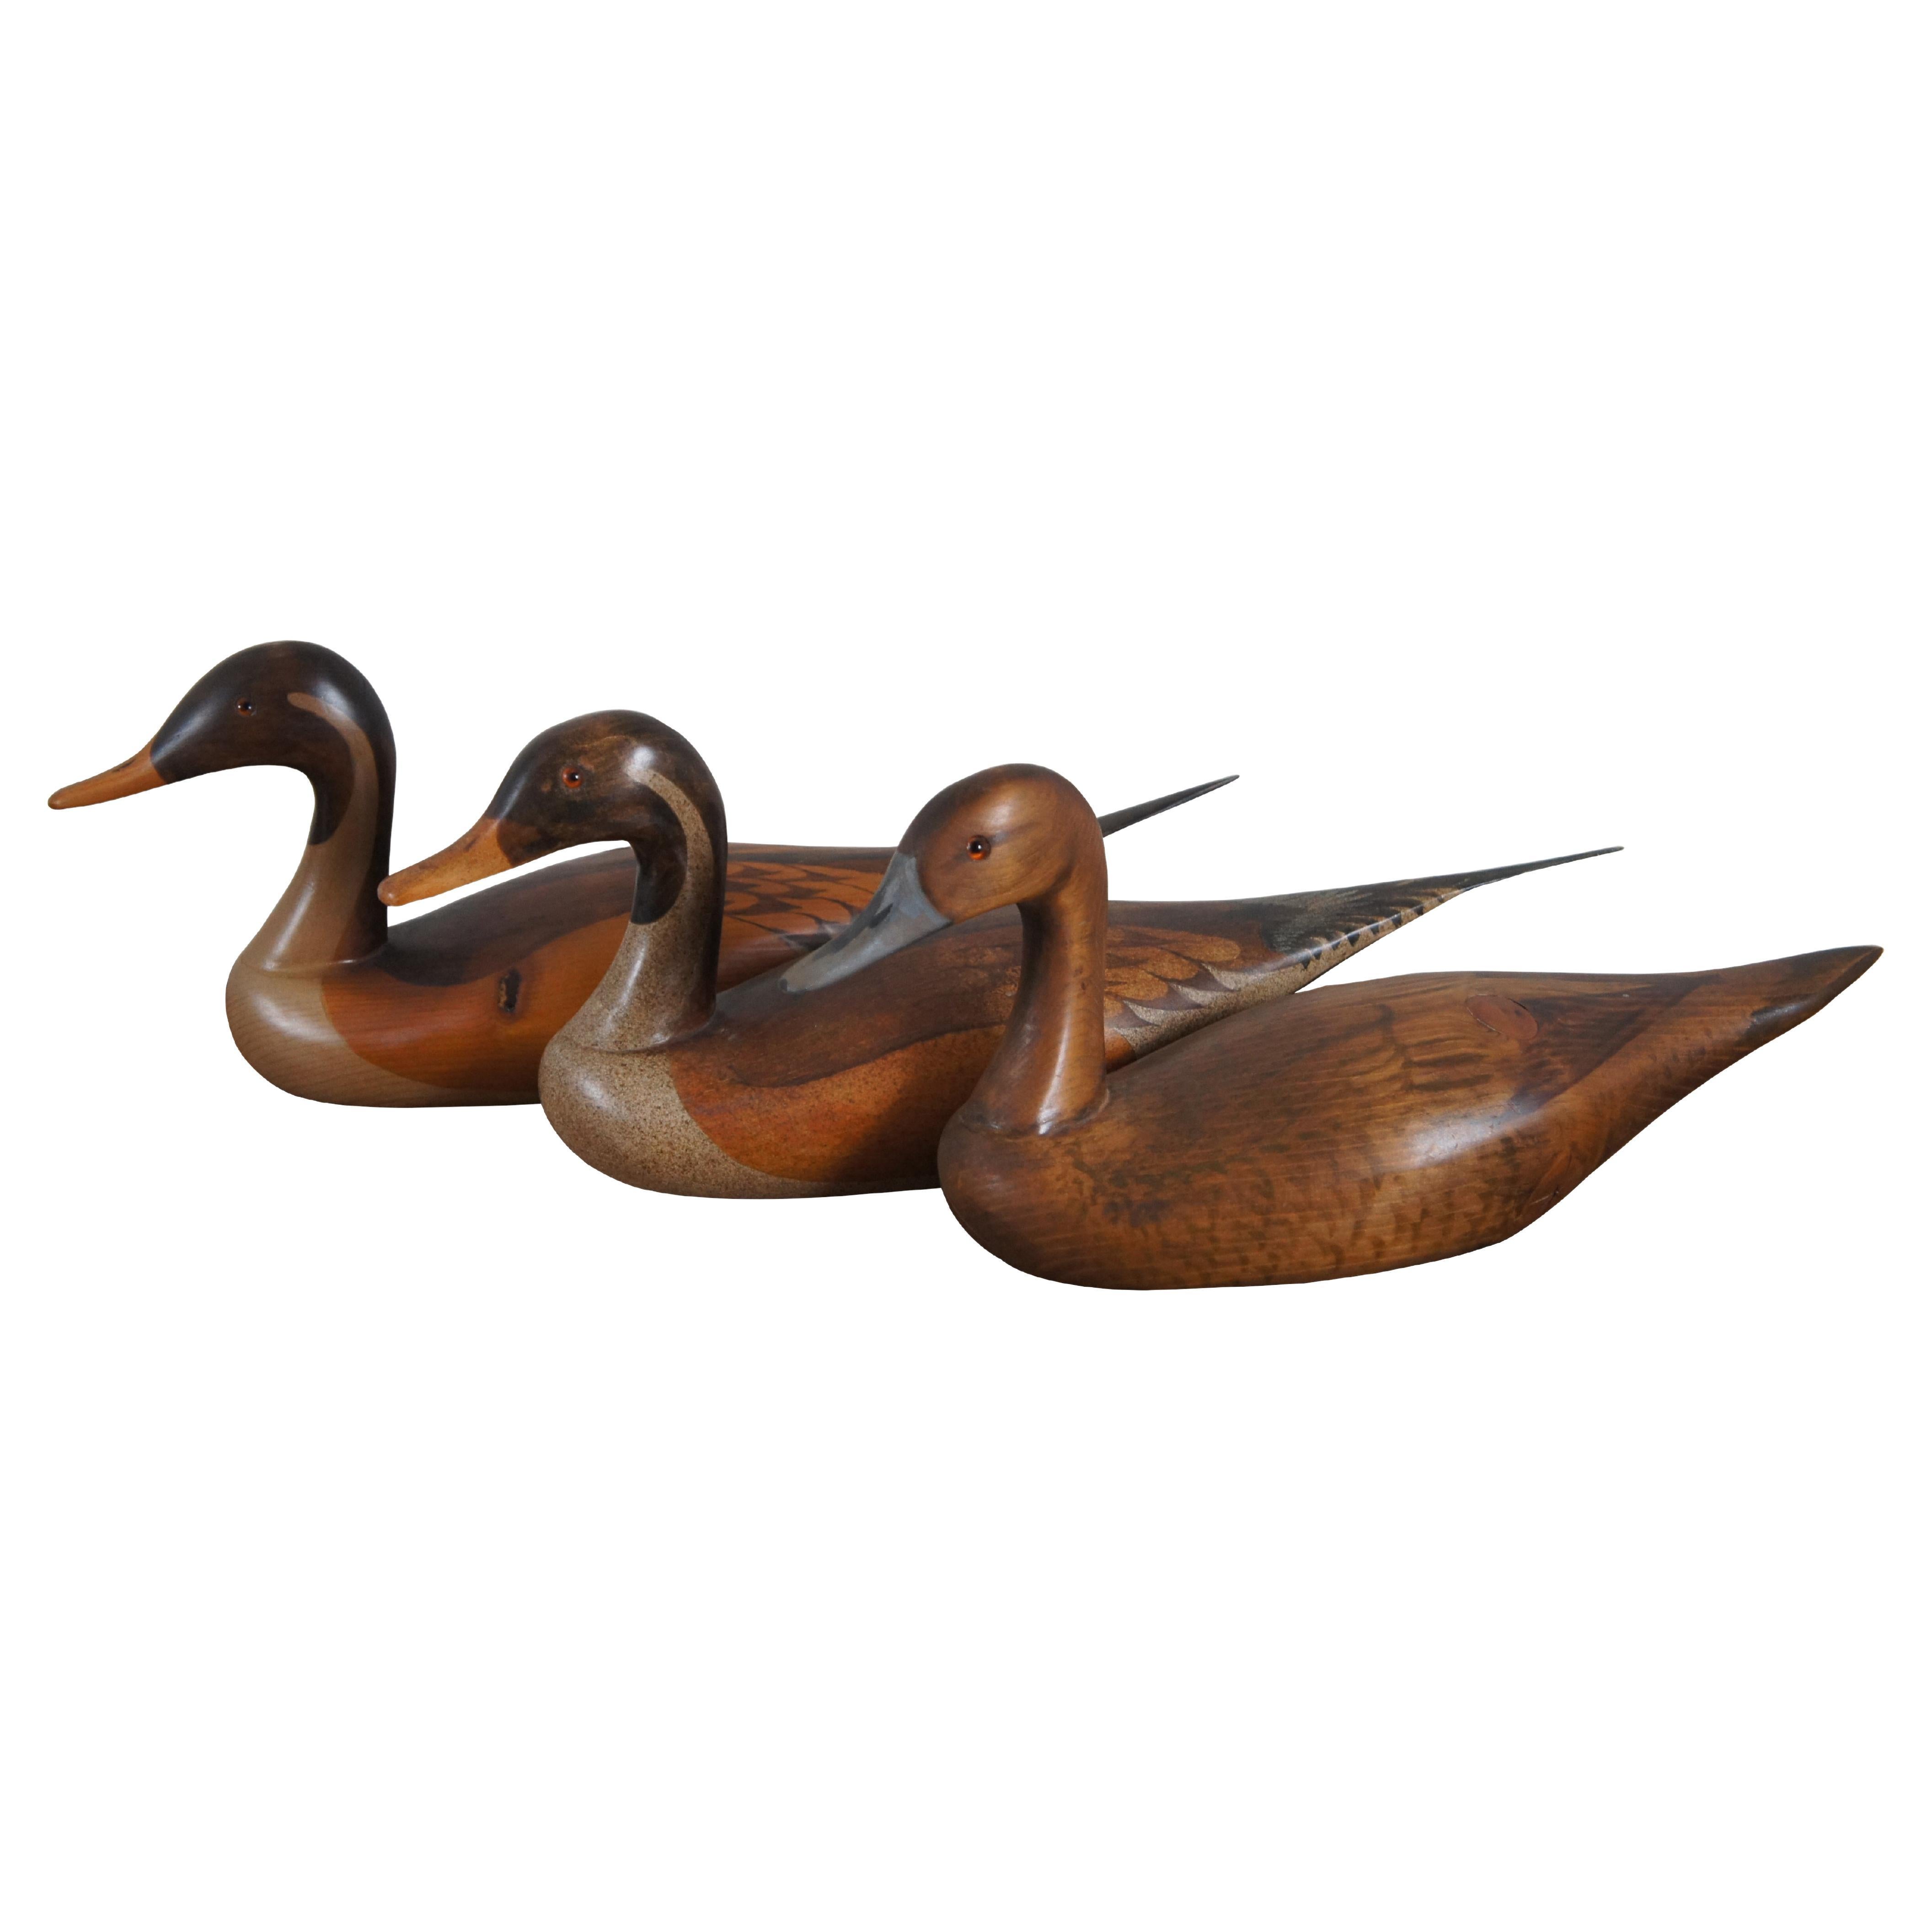 3 décors de canards Drake sculptés Big Sky Carvers Craig Fellows DA Callaway 19"